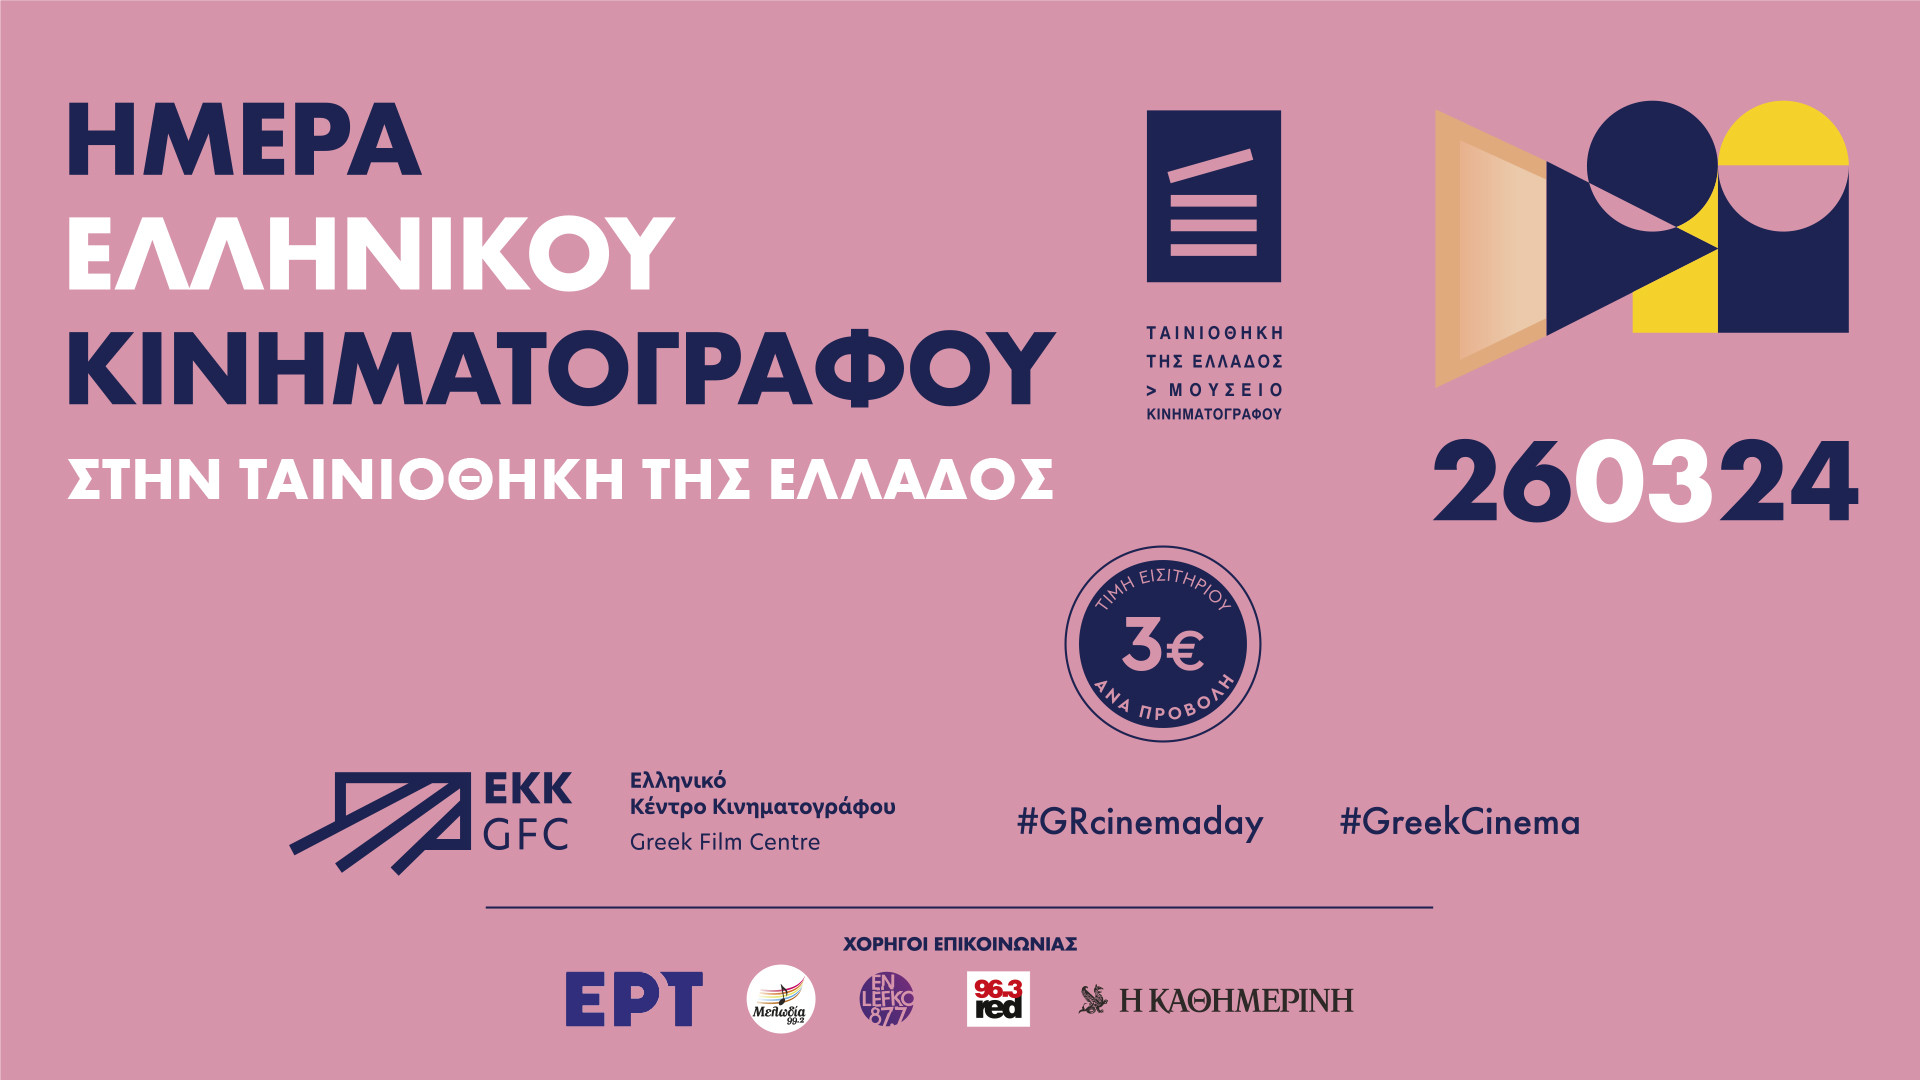 Ημέρα Ελληνικού Κινηματογράφου στην Ταινιοθήκη